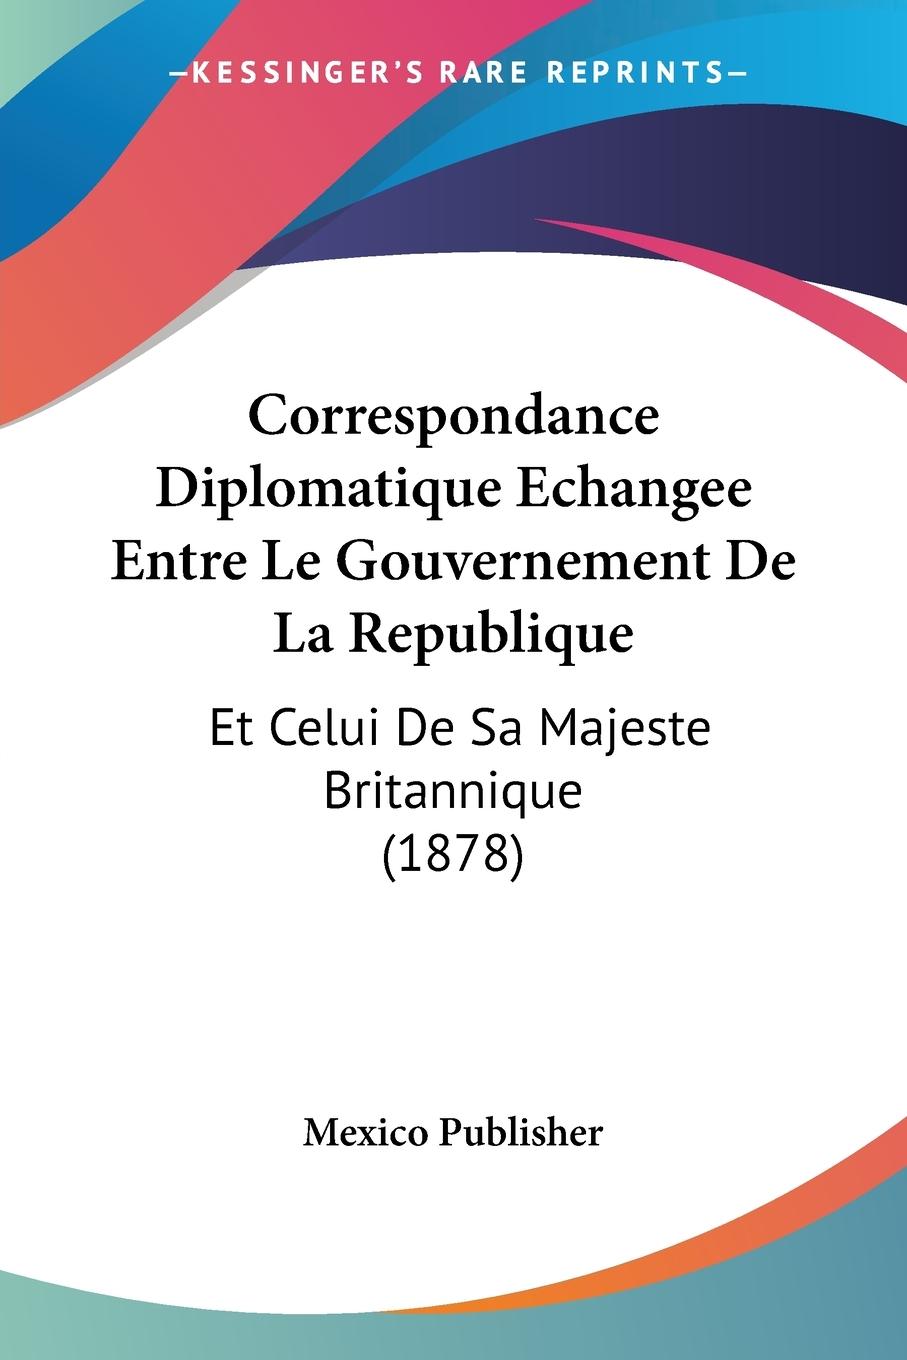 Correspondance Diplomatique Echangee Entre Le Gouvernement De La Republique - Mexico Publisher